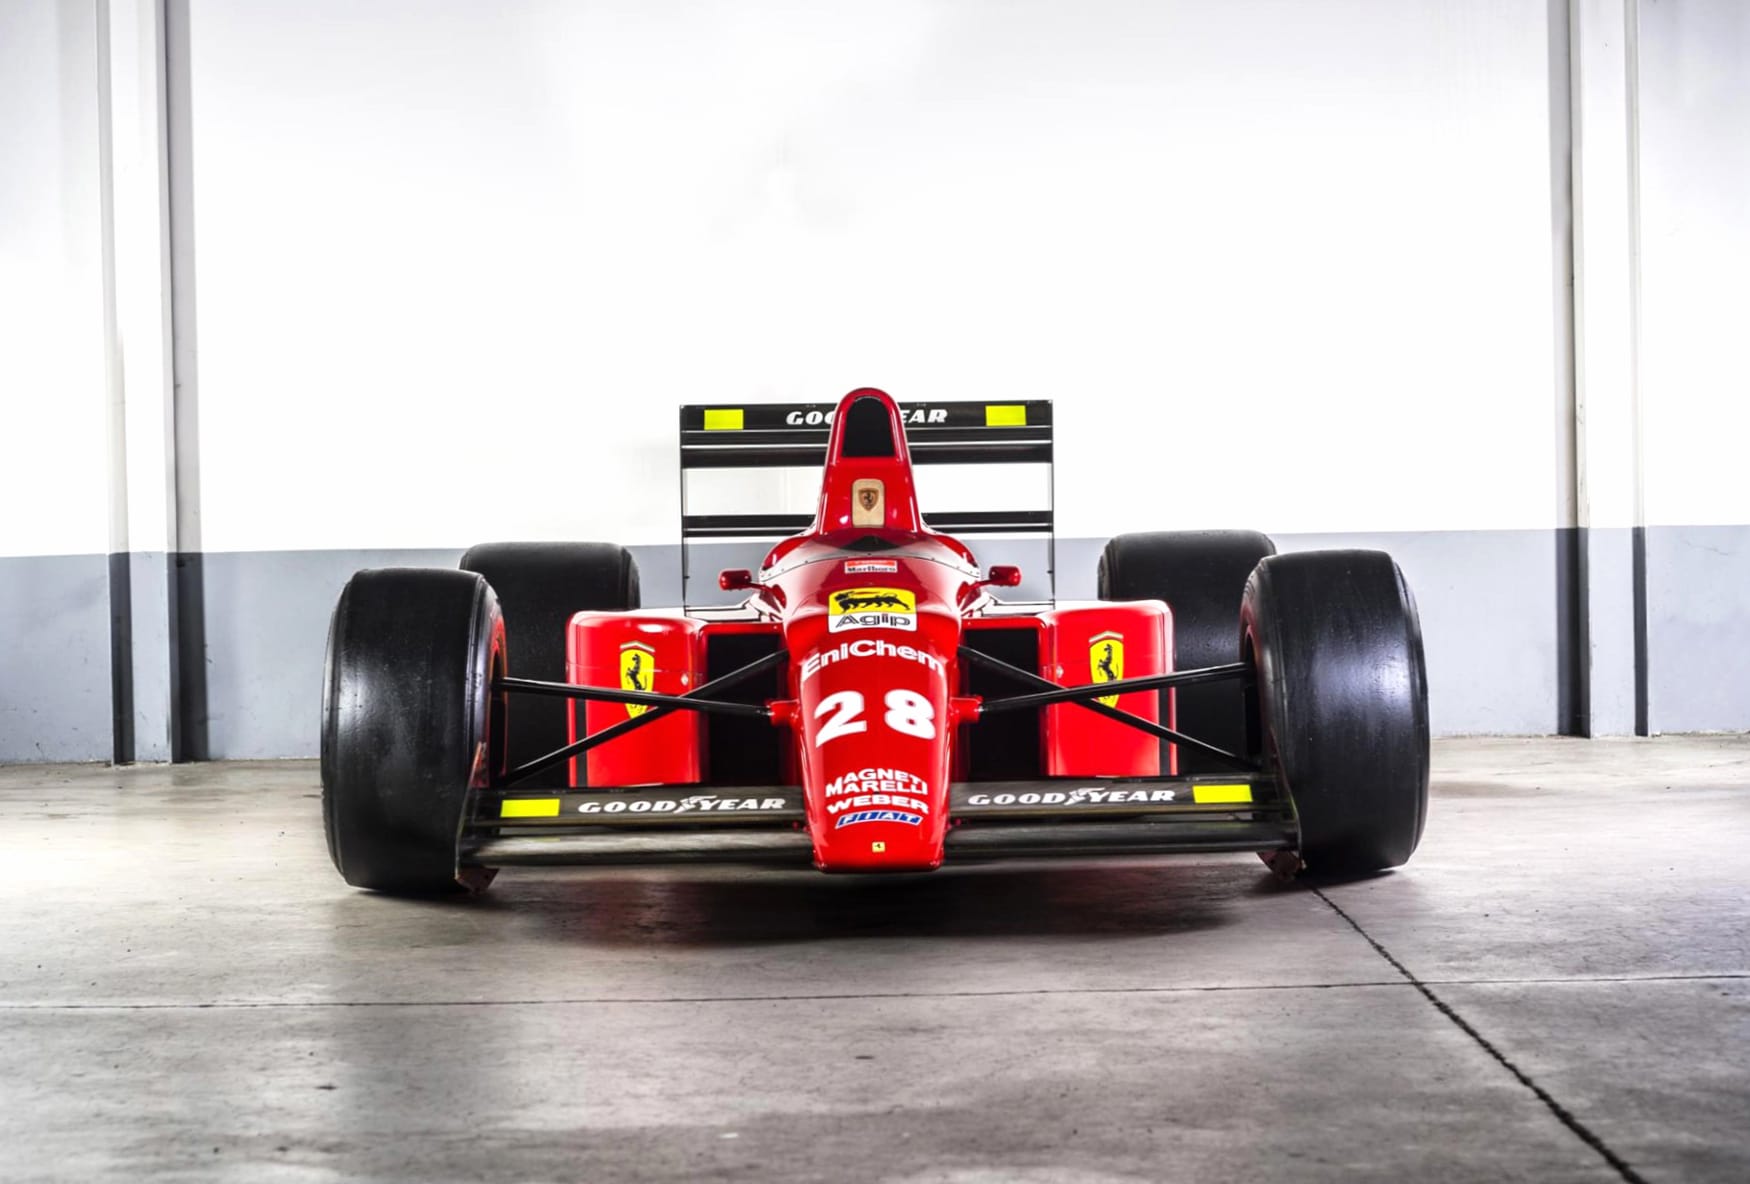 Ferrari F1-89 at 1024 x 1024 iPad size wallpapers HD quality